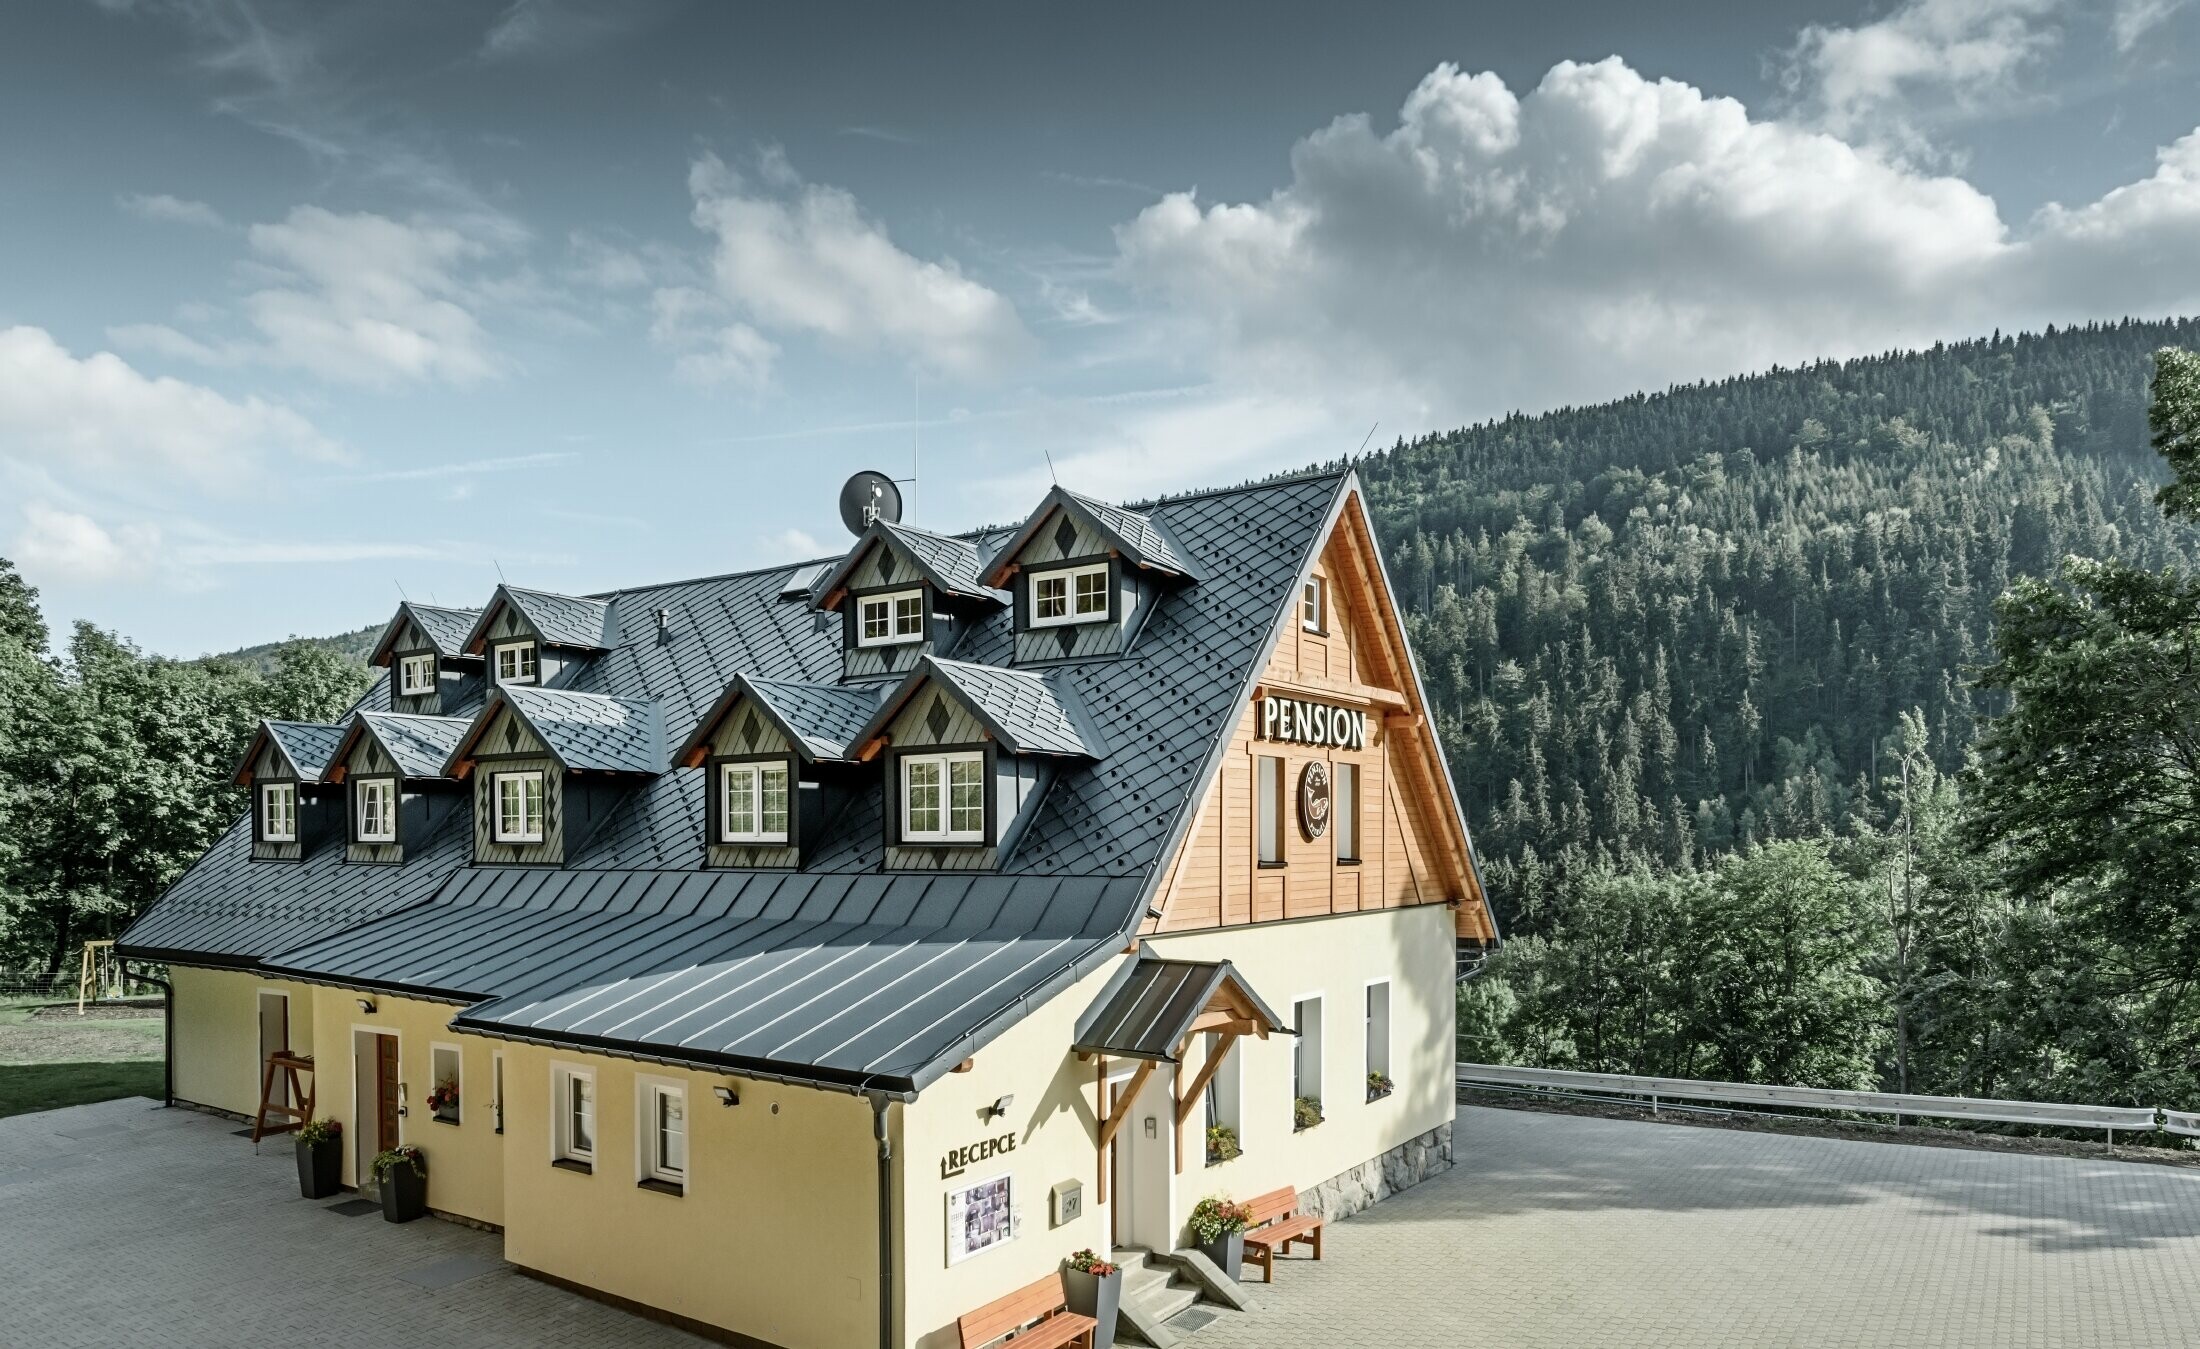 Pension in Tsjechië met schuin dak en veel dakkapellen bekleed met aluminium dakbedekking van PREFA, losangedak met schubbenlook met sneeuwbescherming